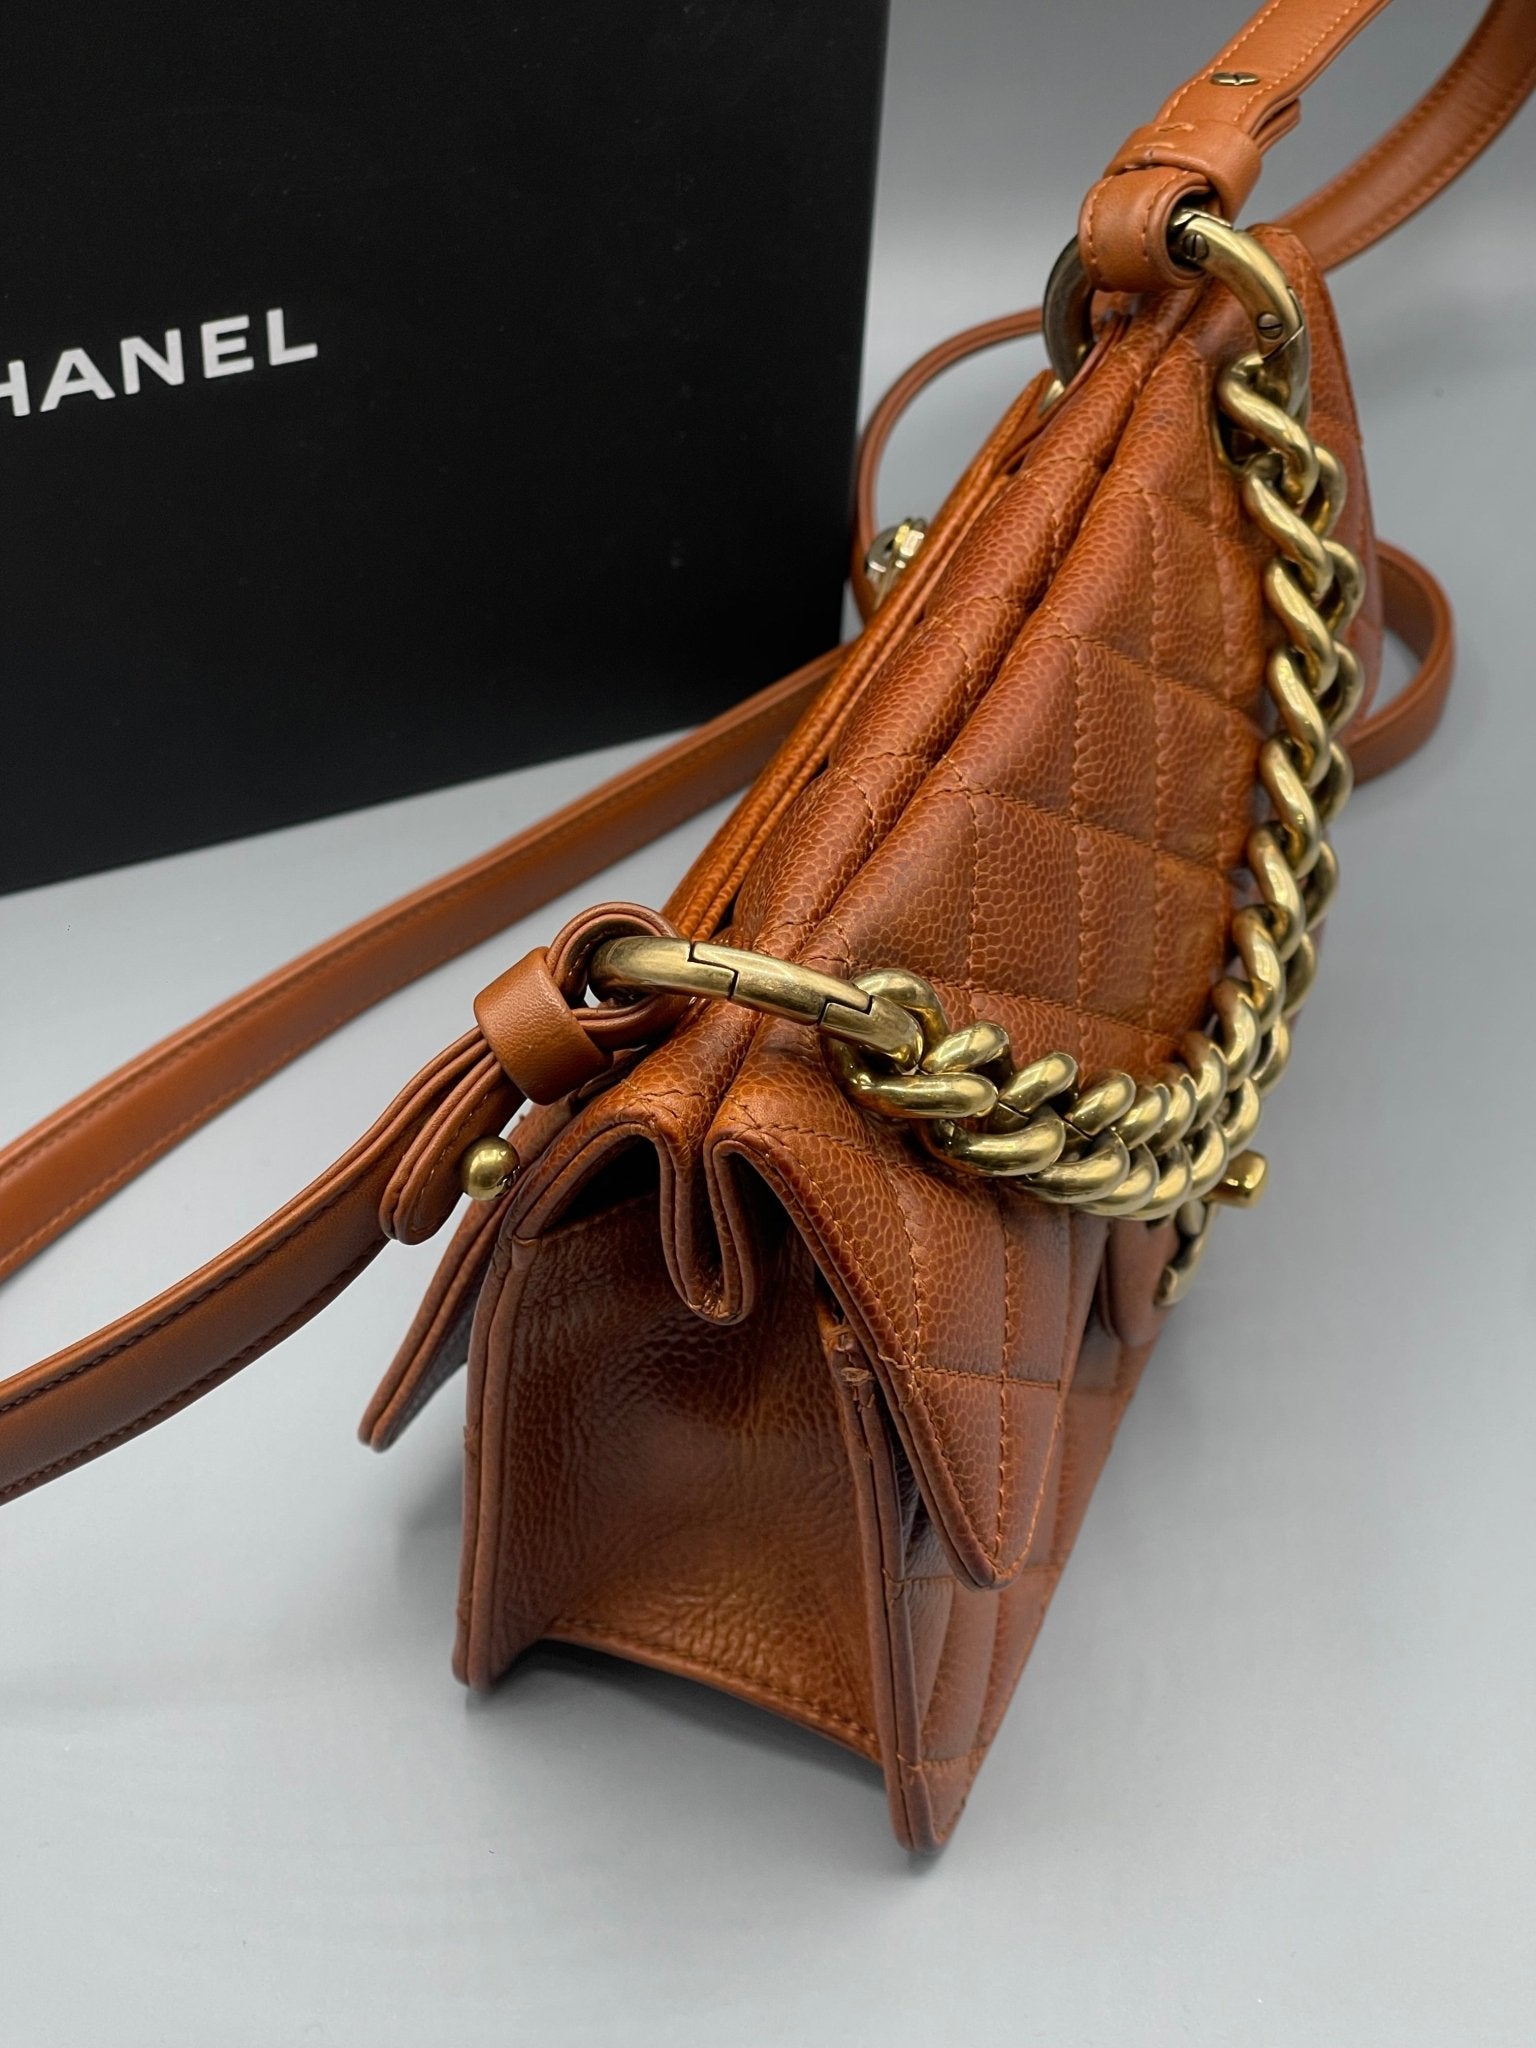 Chanel - Petit Sac classique chain - Les Folies d&